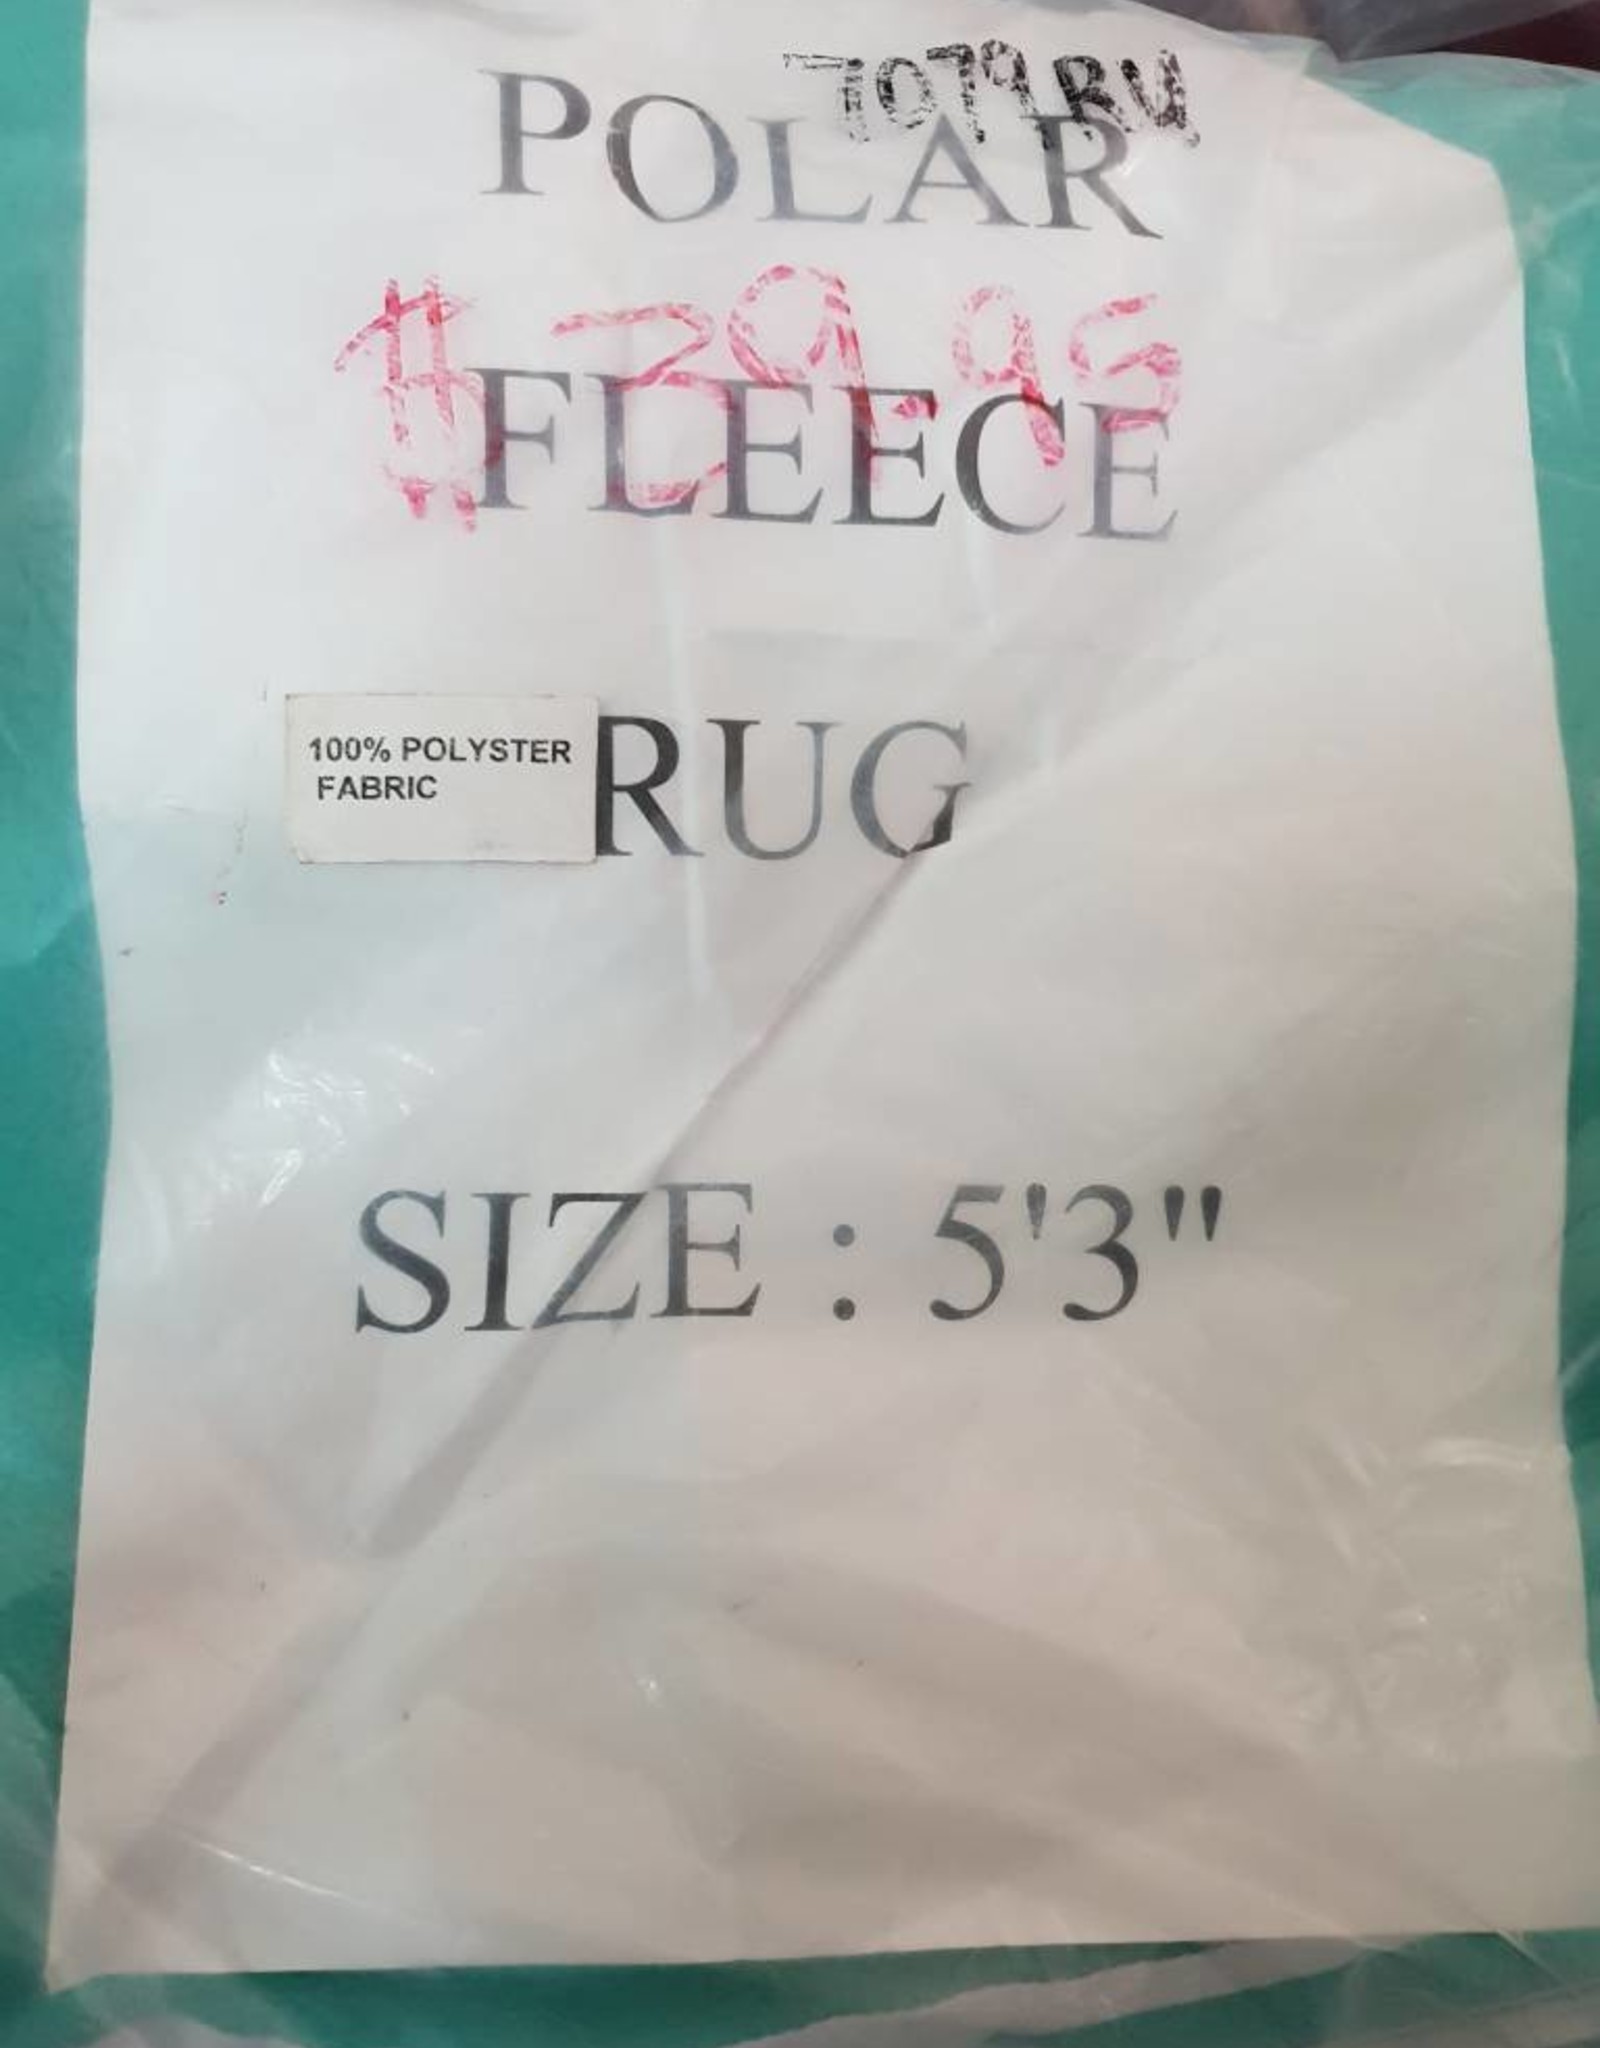 Polar Fleece Rug - Jade - 5'3"